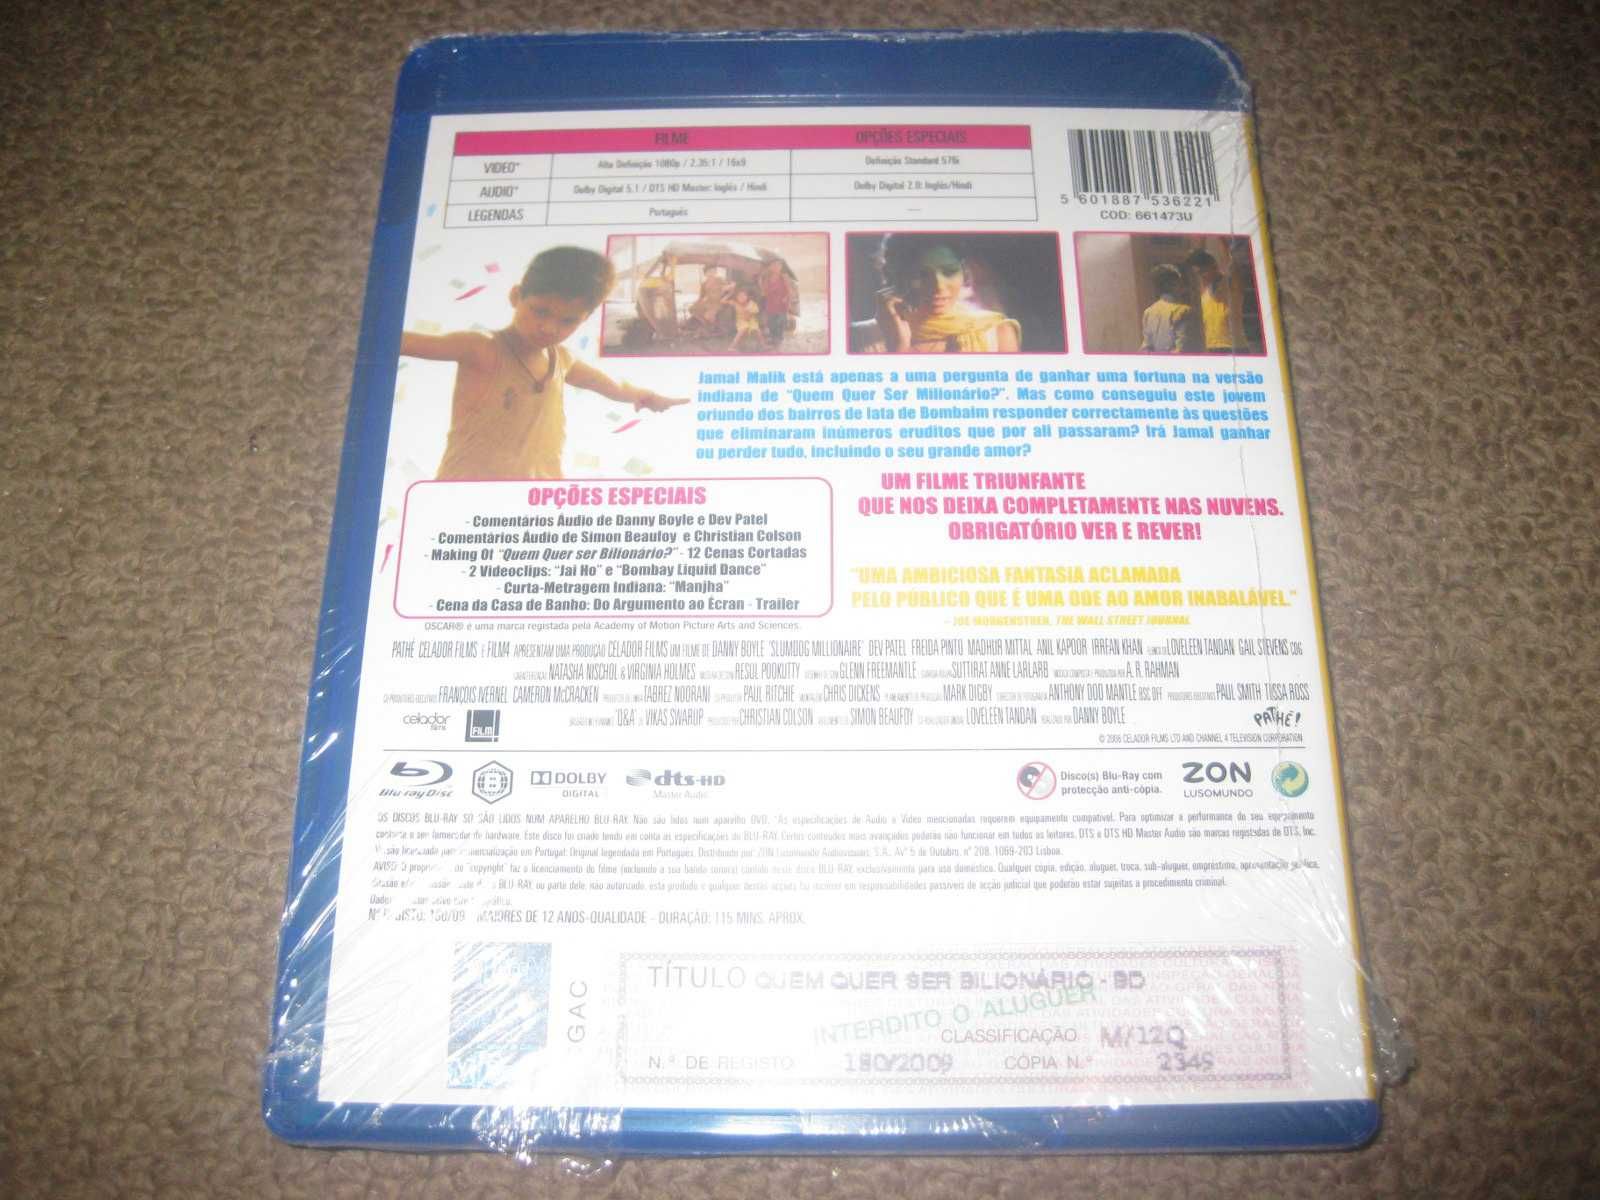 Blu-Ray "Quem Quer Ser Bilionário?" de Danny Boyle/Selado!